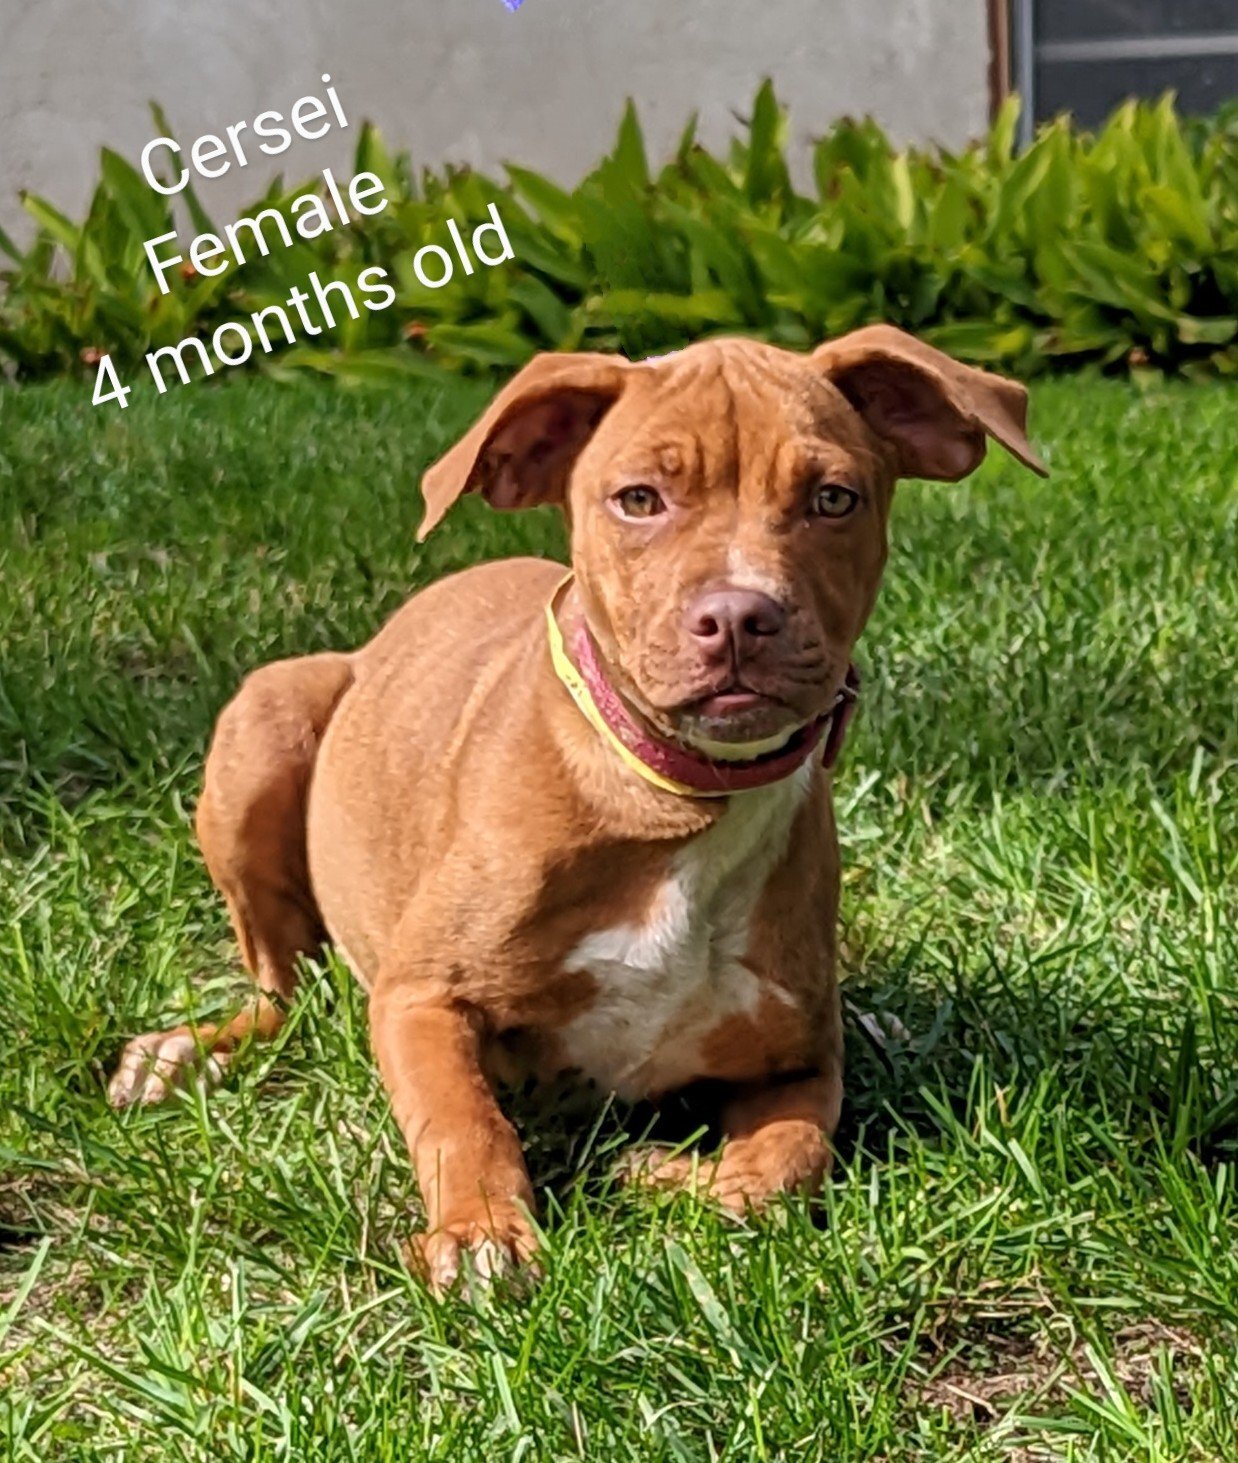 Cersei - Hound mix - 4 months old